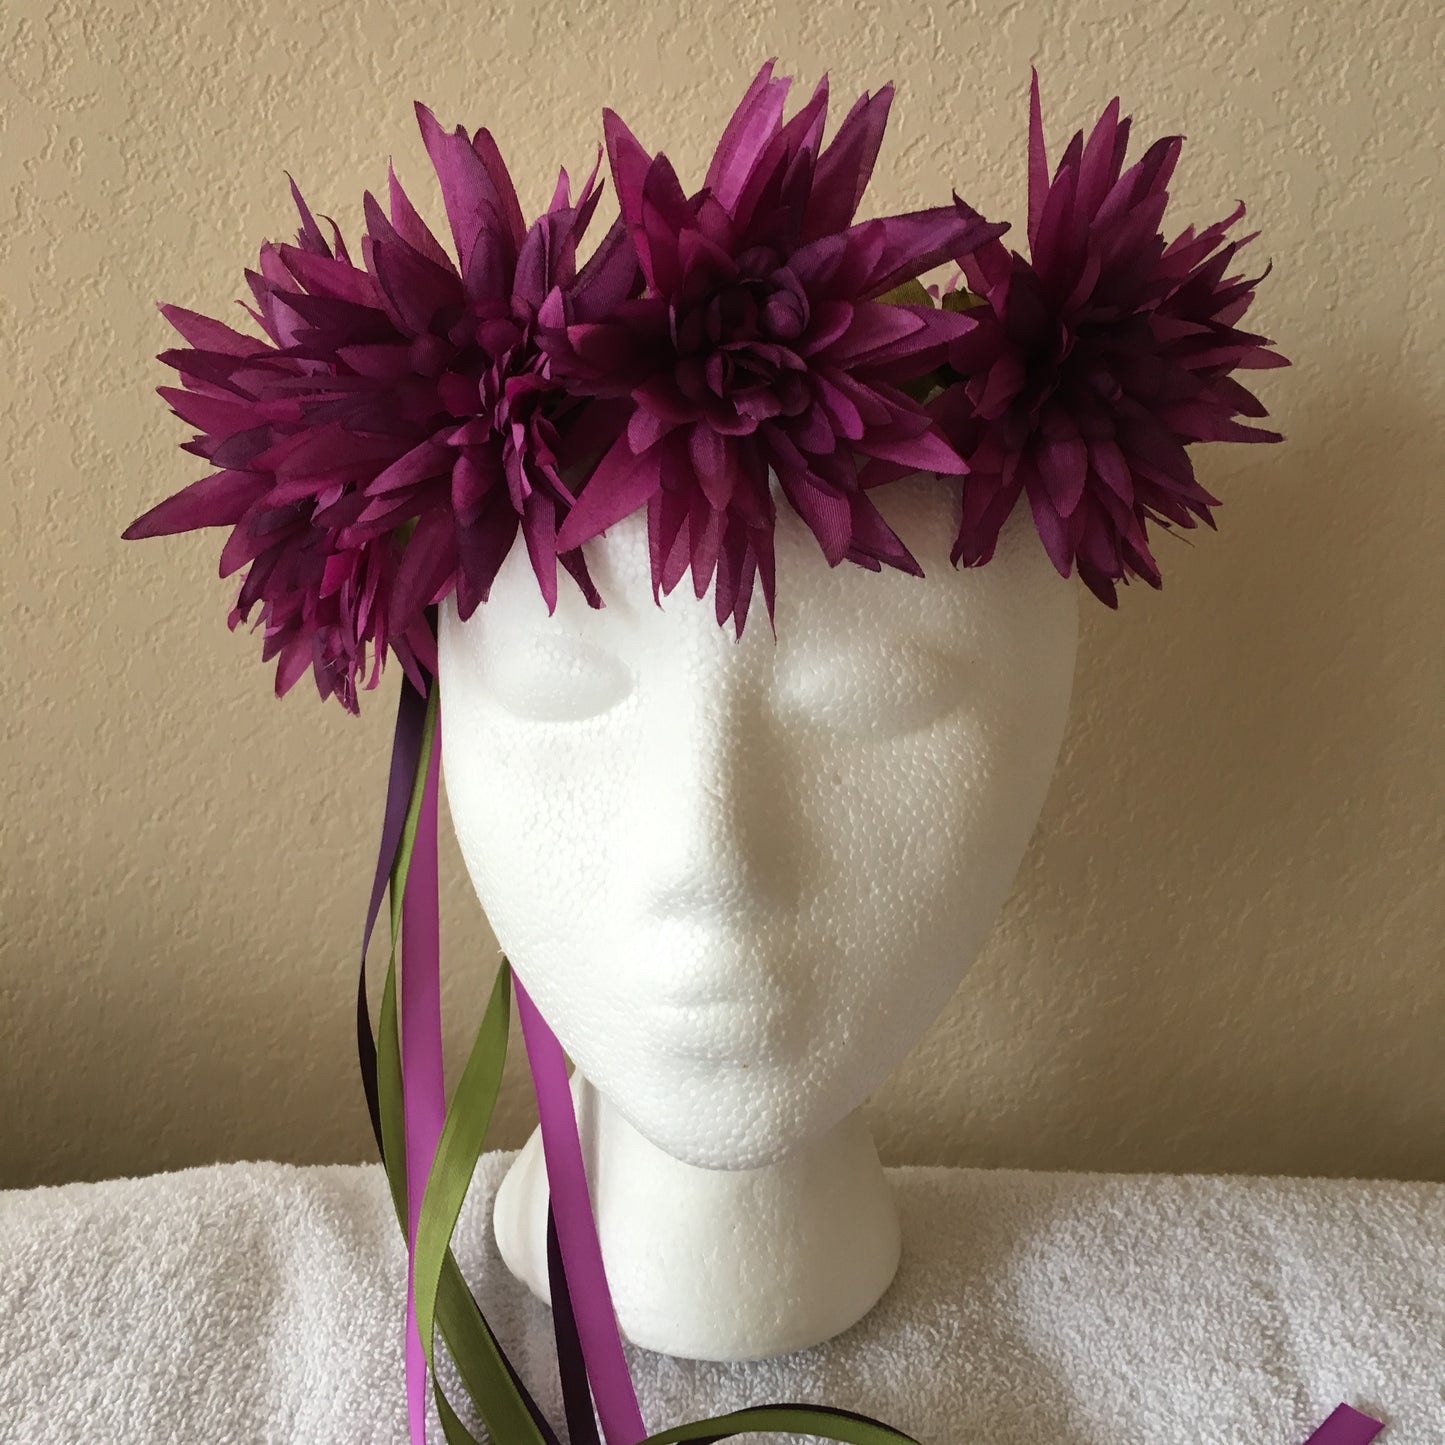 Medium Wreath - Purple spiky flowers